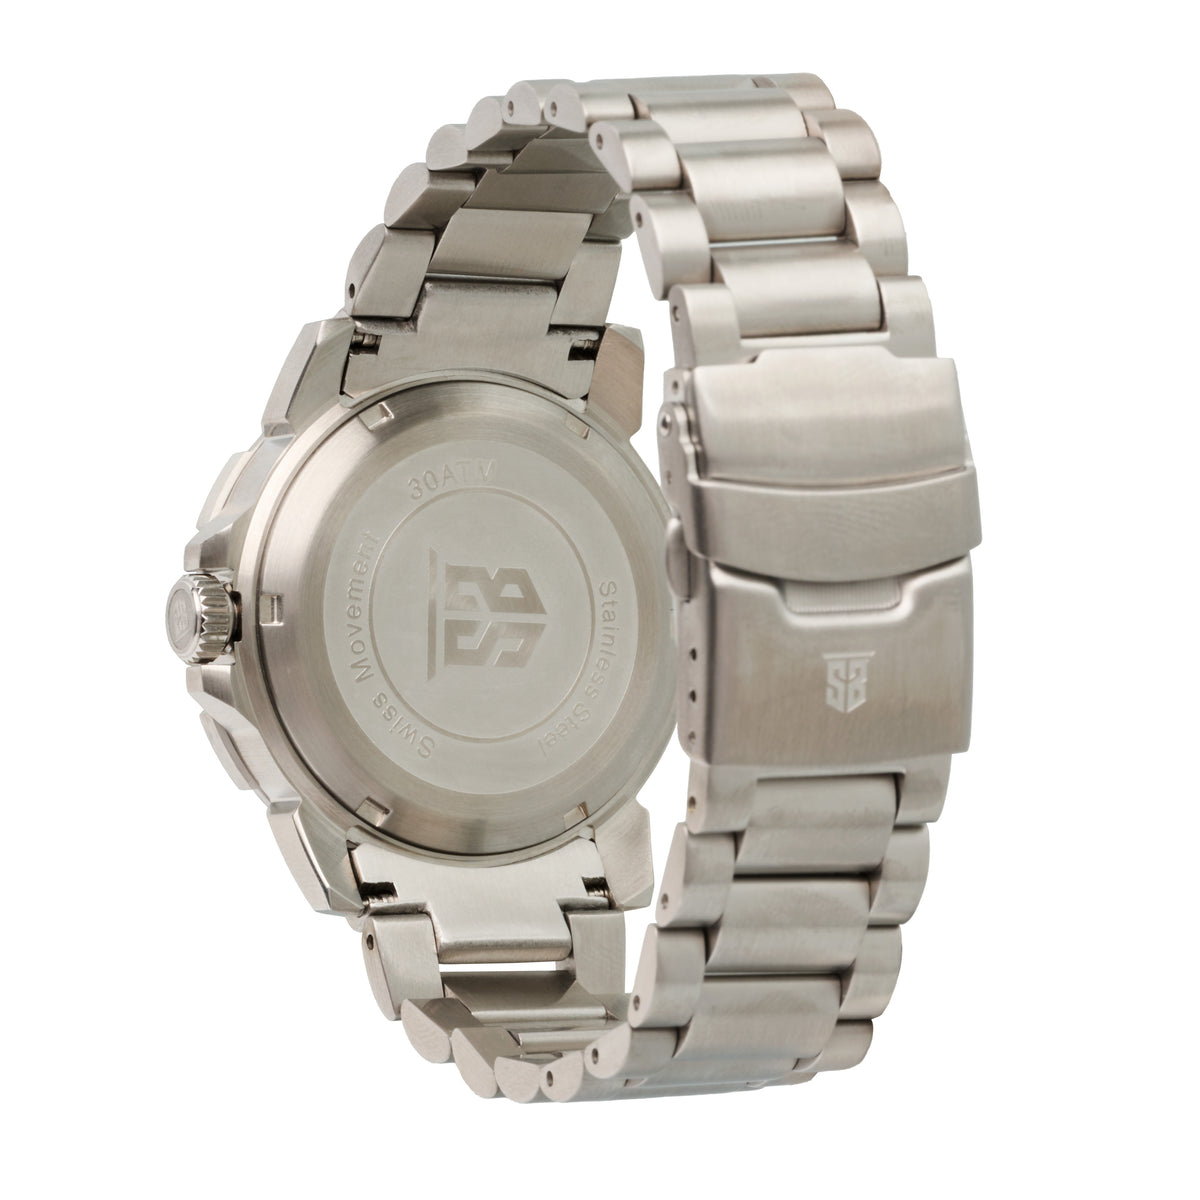 SANS-13 Stainless Steel Watch Bracelet